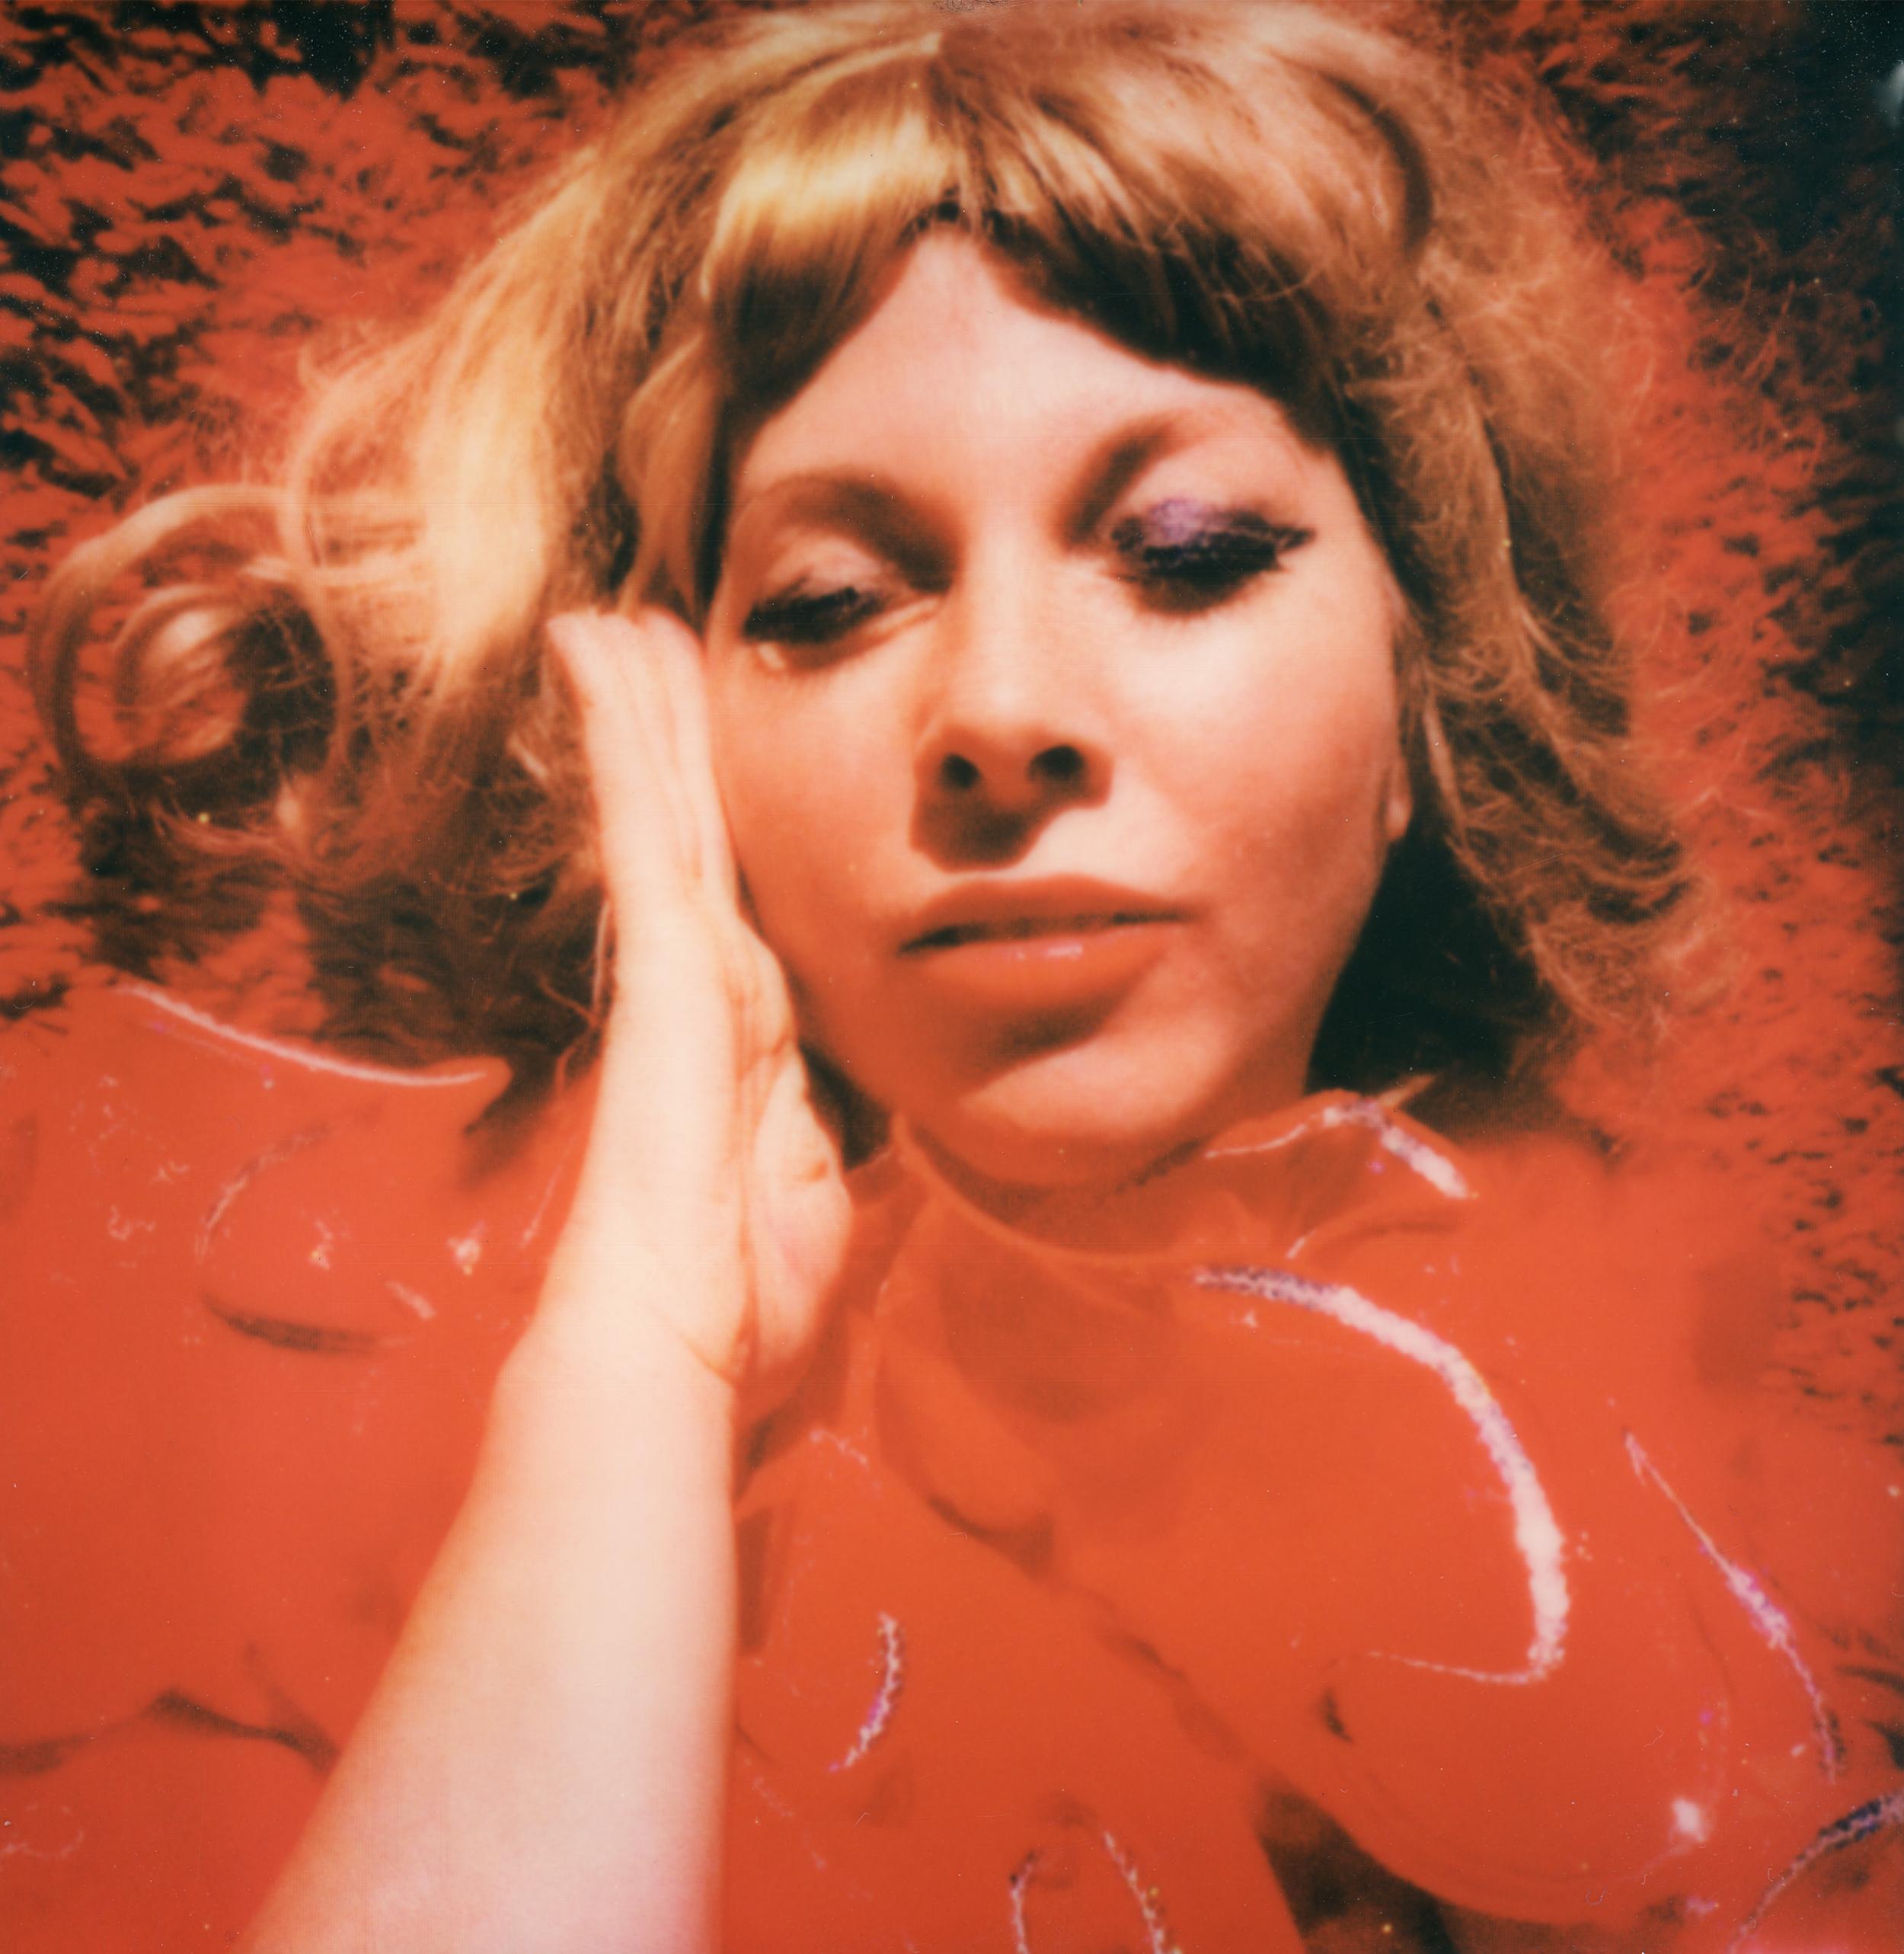 Painted Red - Zeitgenössisch, Polaroid, Fotografie, Figurativ, Porträt